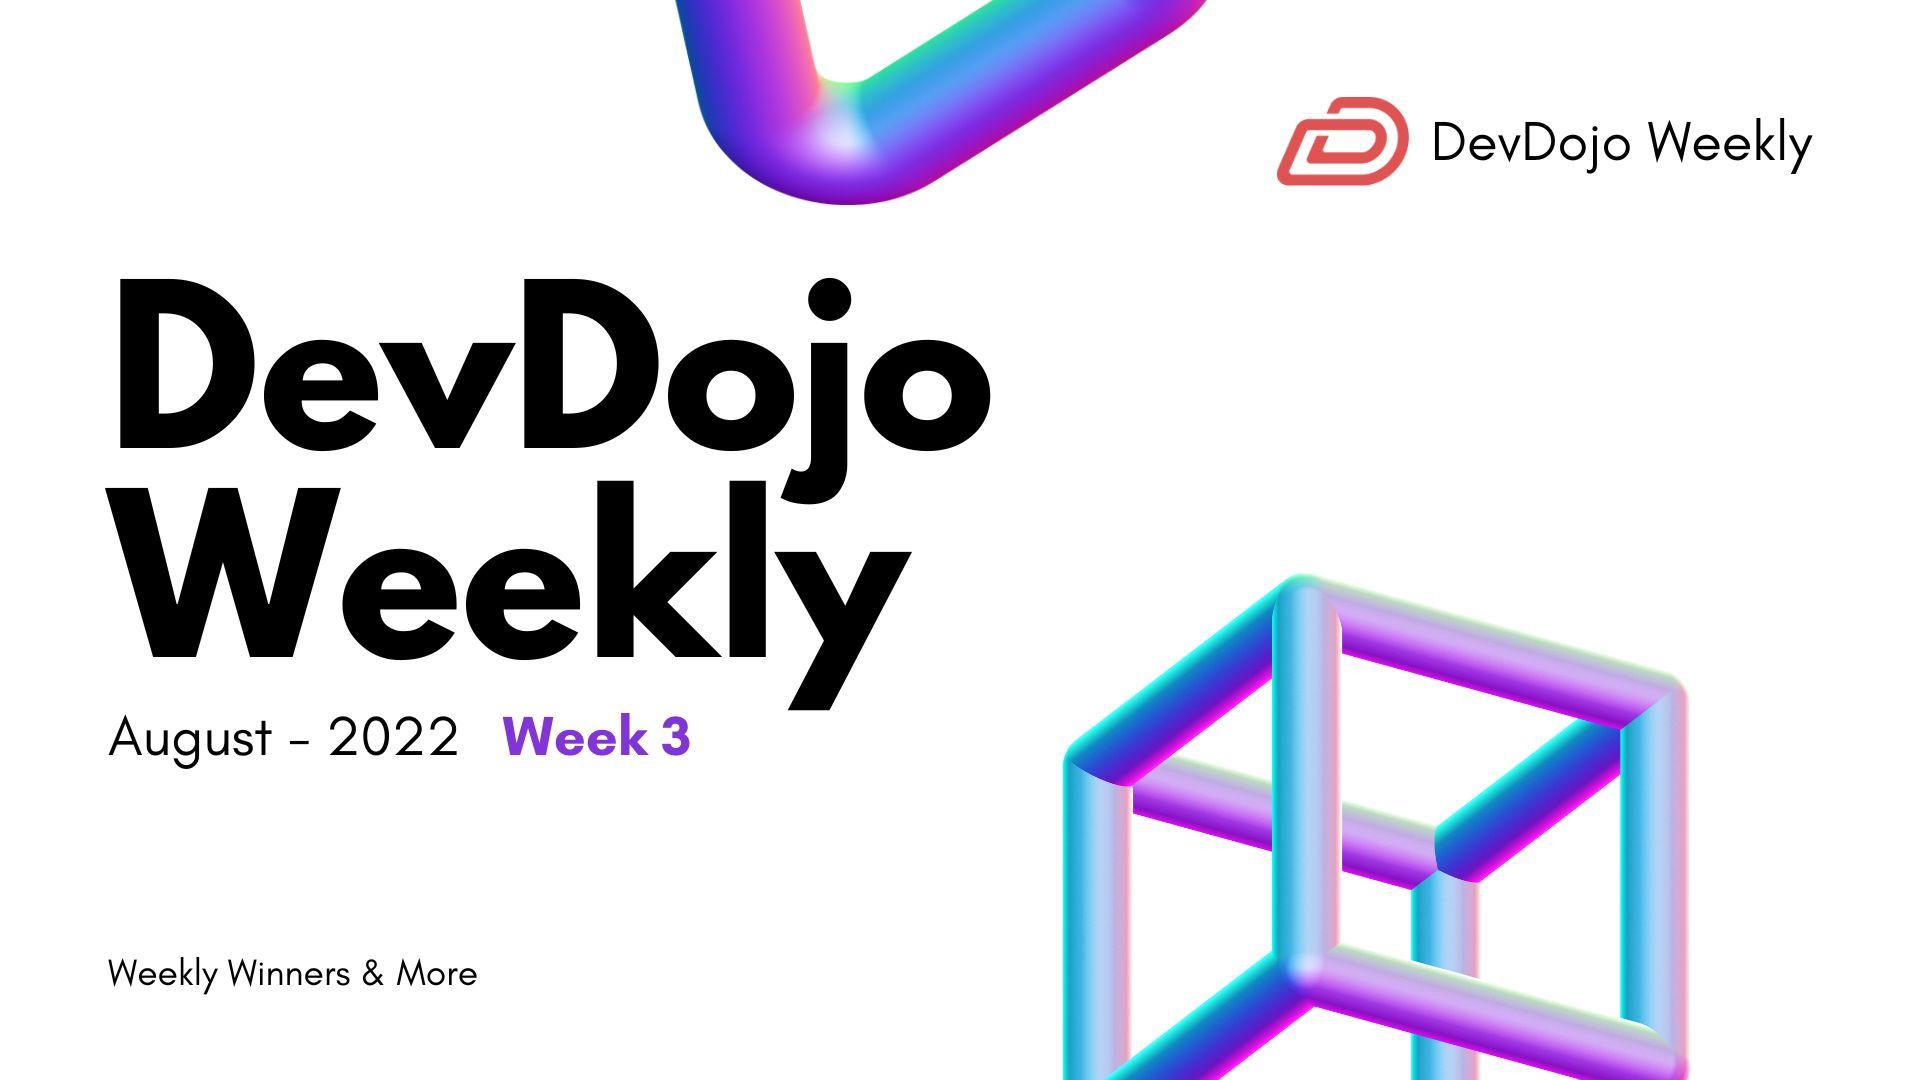 DevDojo Weekly - August 2022